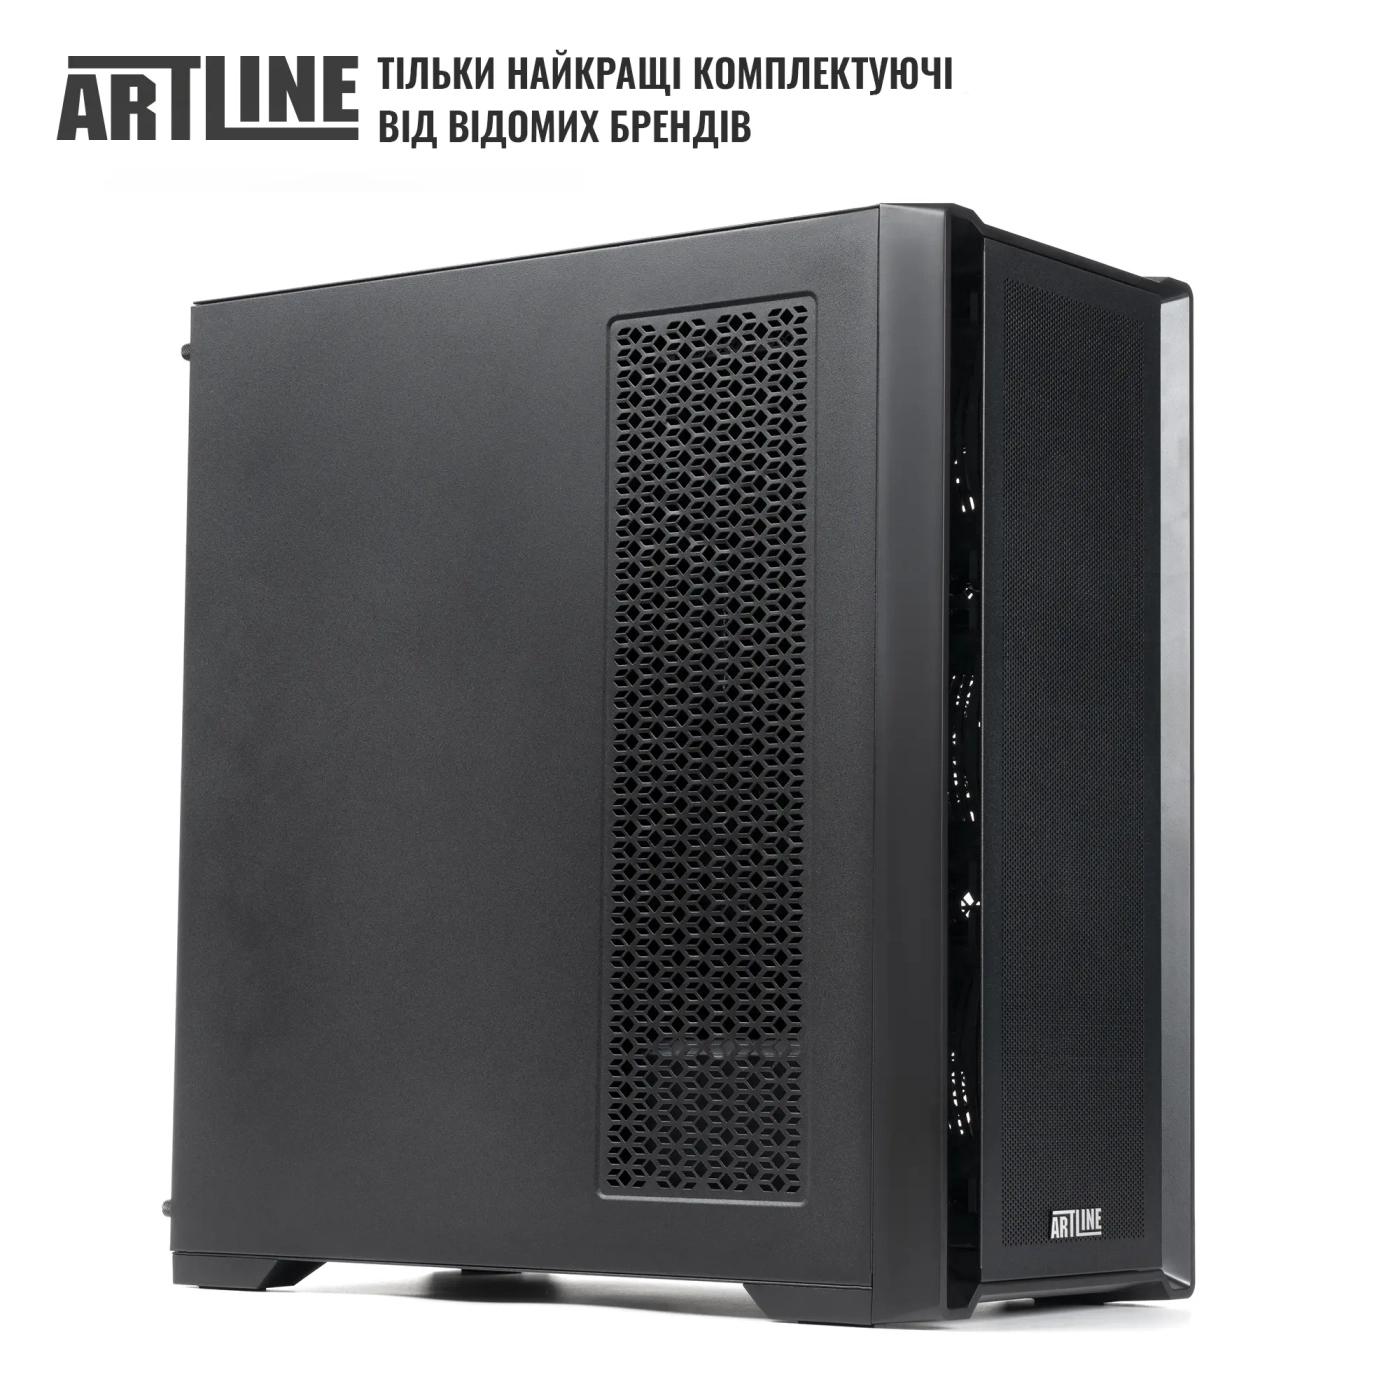 Купить Сервер ARTLINE Business T81 (T81v27) - фото 4